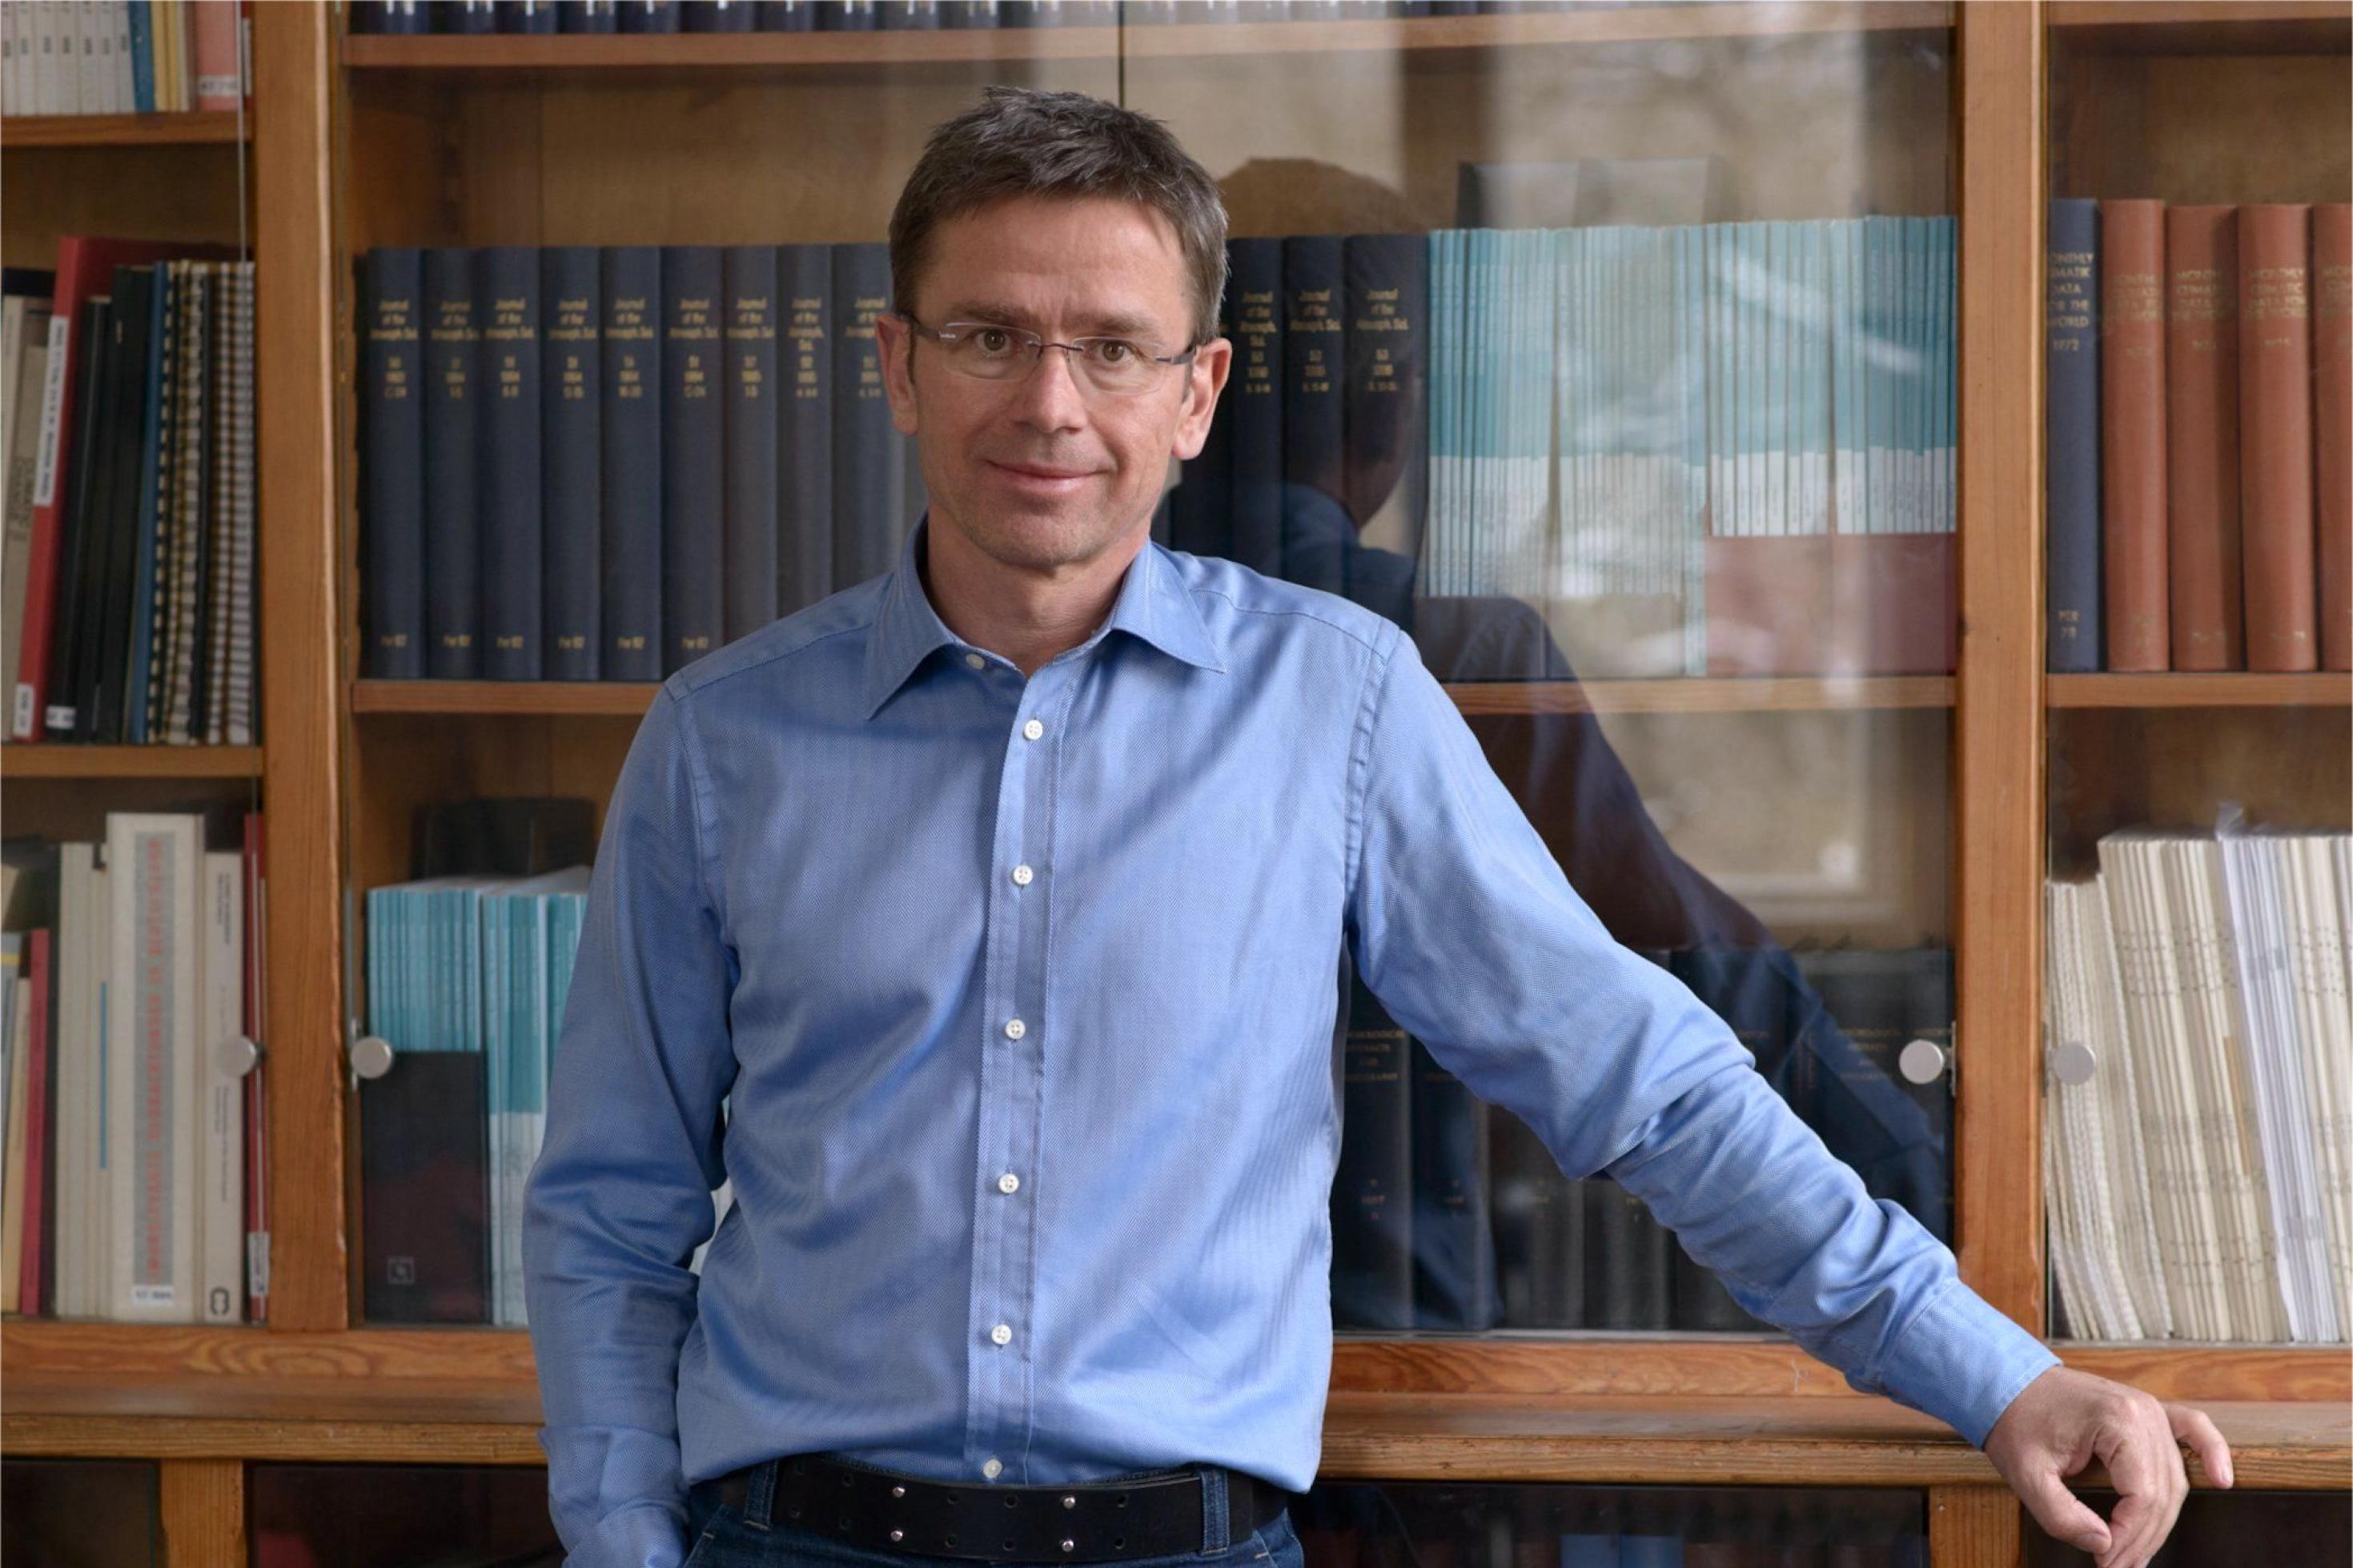 Professor Stefan Rahmstorf steht vor einem Bücherschrank. Er ist Klima- und Meeresforscher und leitet die Abteilung Erdsystemanalyse am Potsdam-Institut für Klimafolgenforschung (PIK).